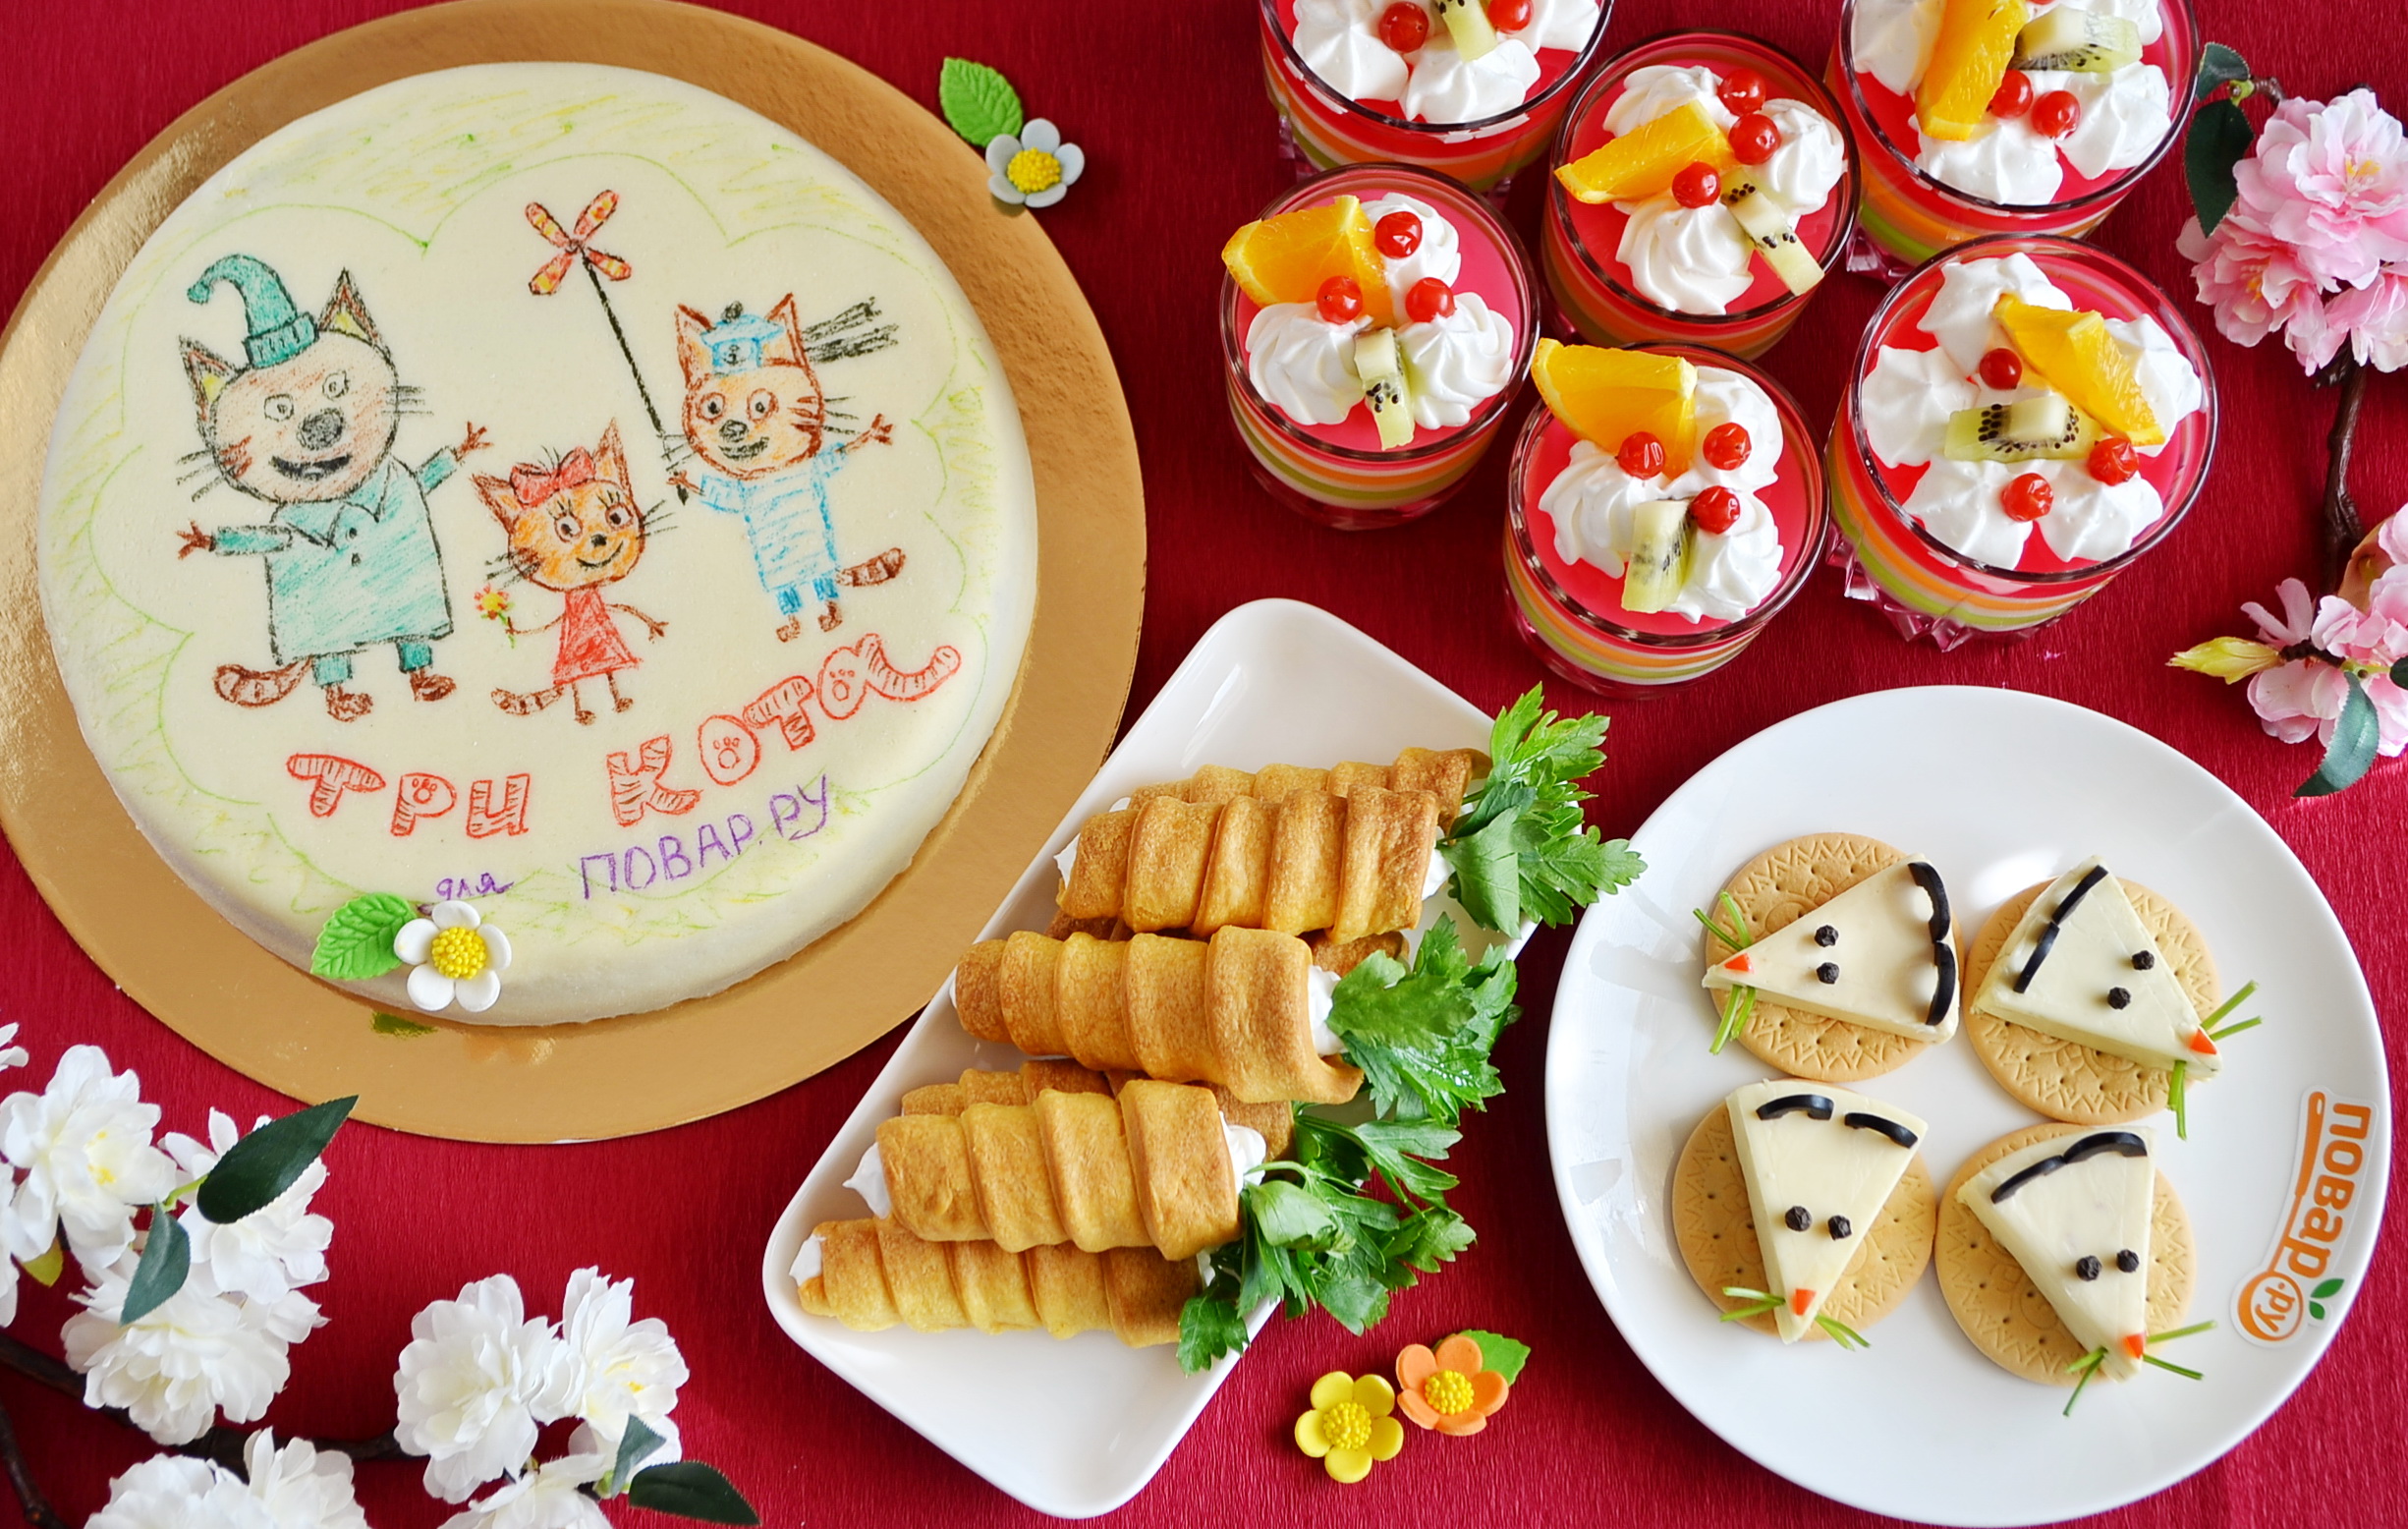 Меню на детский праздник: закуска "Мышки на крекерах", рожки с кремом, торт "Три кота" и слоеное желе